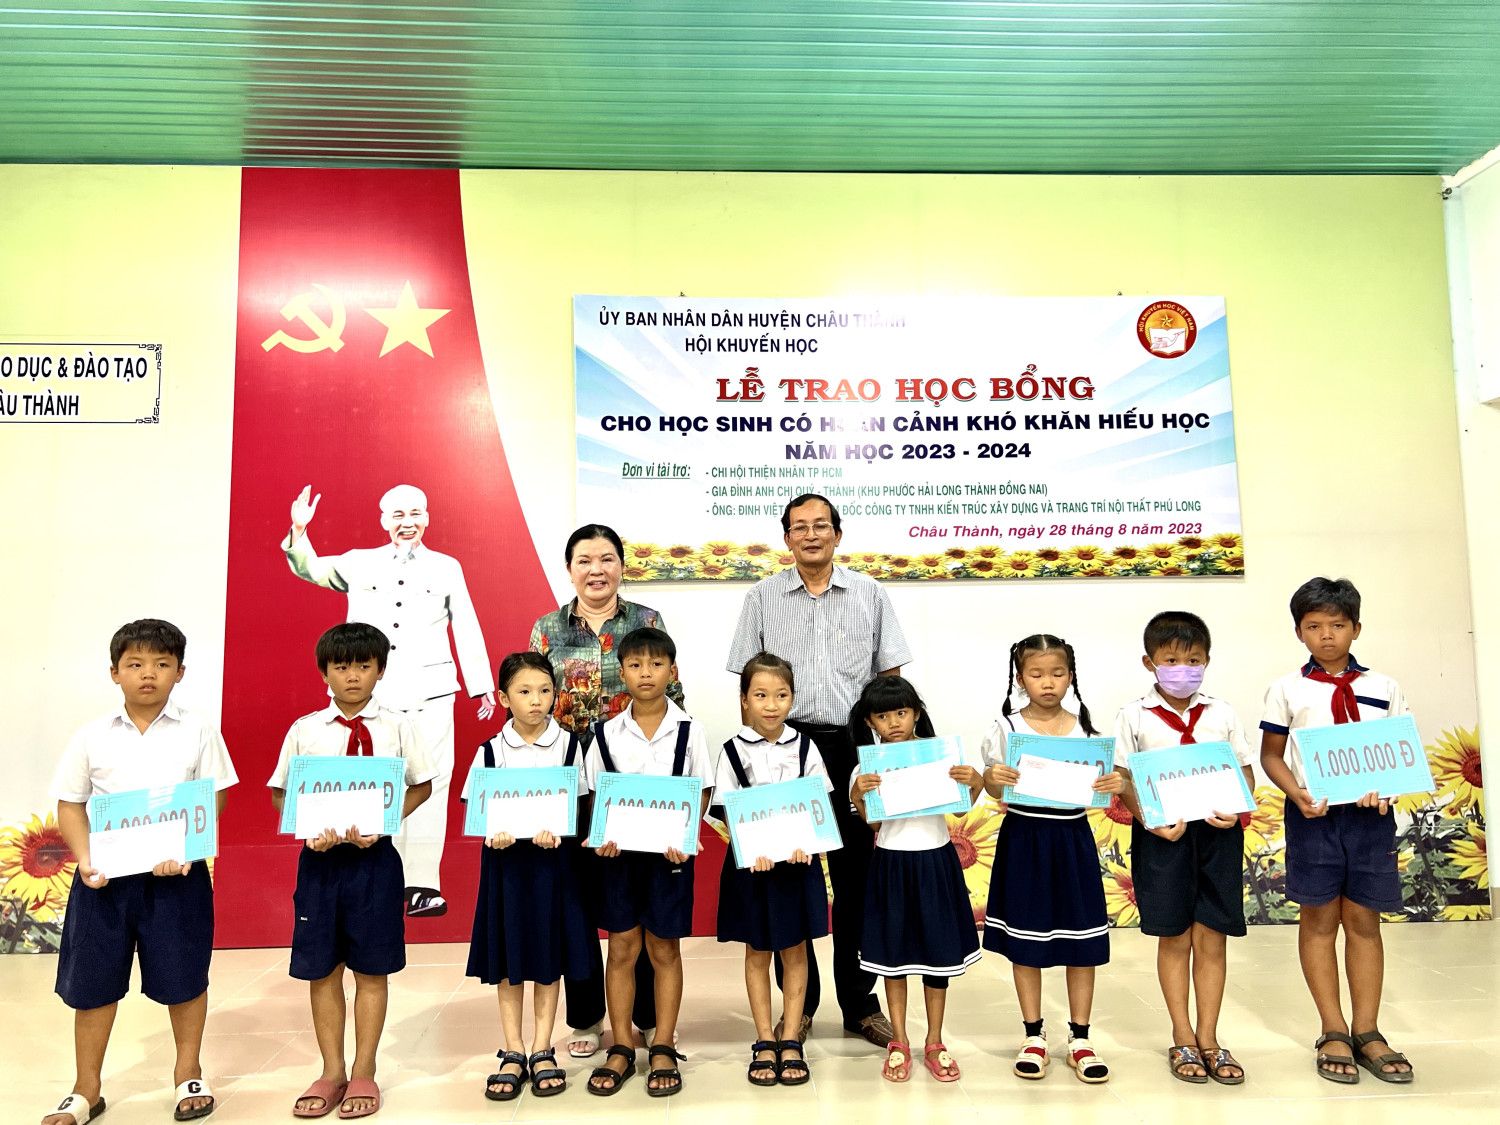 Hội khuyến học tỉnh Tây Ninh: Trao học bổng cho các em học sinh có hoàn cảnh khó khăn năm học 2023-2024